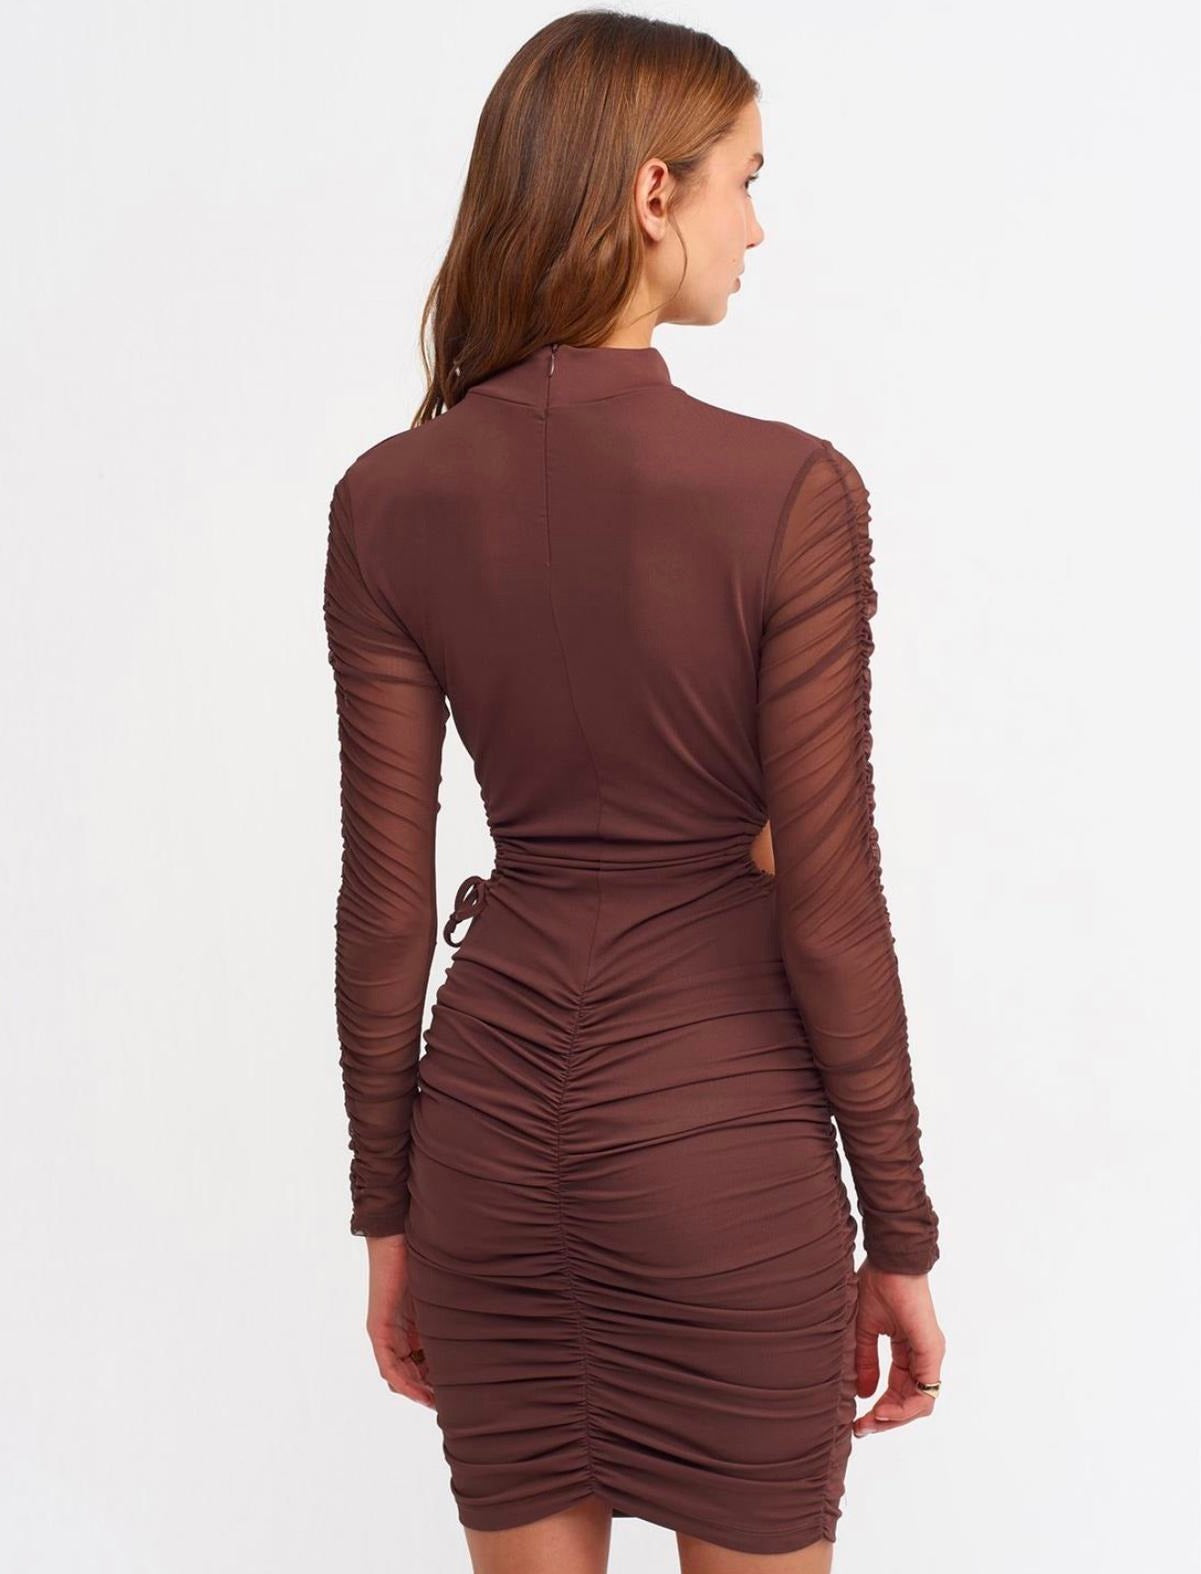 Дамска рокля SISI  https://bvseductive.com/products/дамска-рокля-sisi  94 % полиестер 6 % еластан стилна къса рокля в цвят бордо в миди дължина с дълъг тюлен ръкав&nbsp; вталена кройка, подчертаваща фигурата изработена от приятна материя чудесен избор за Вашата визия